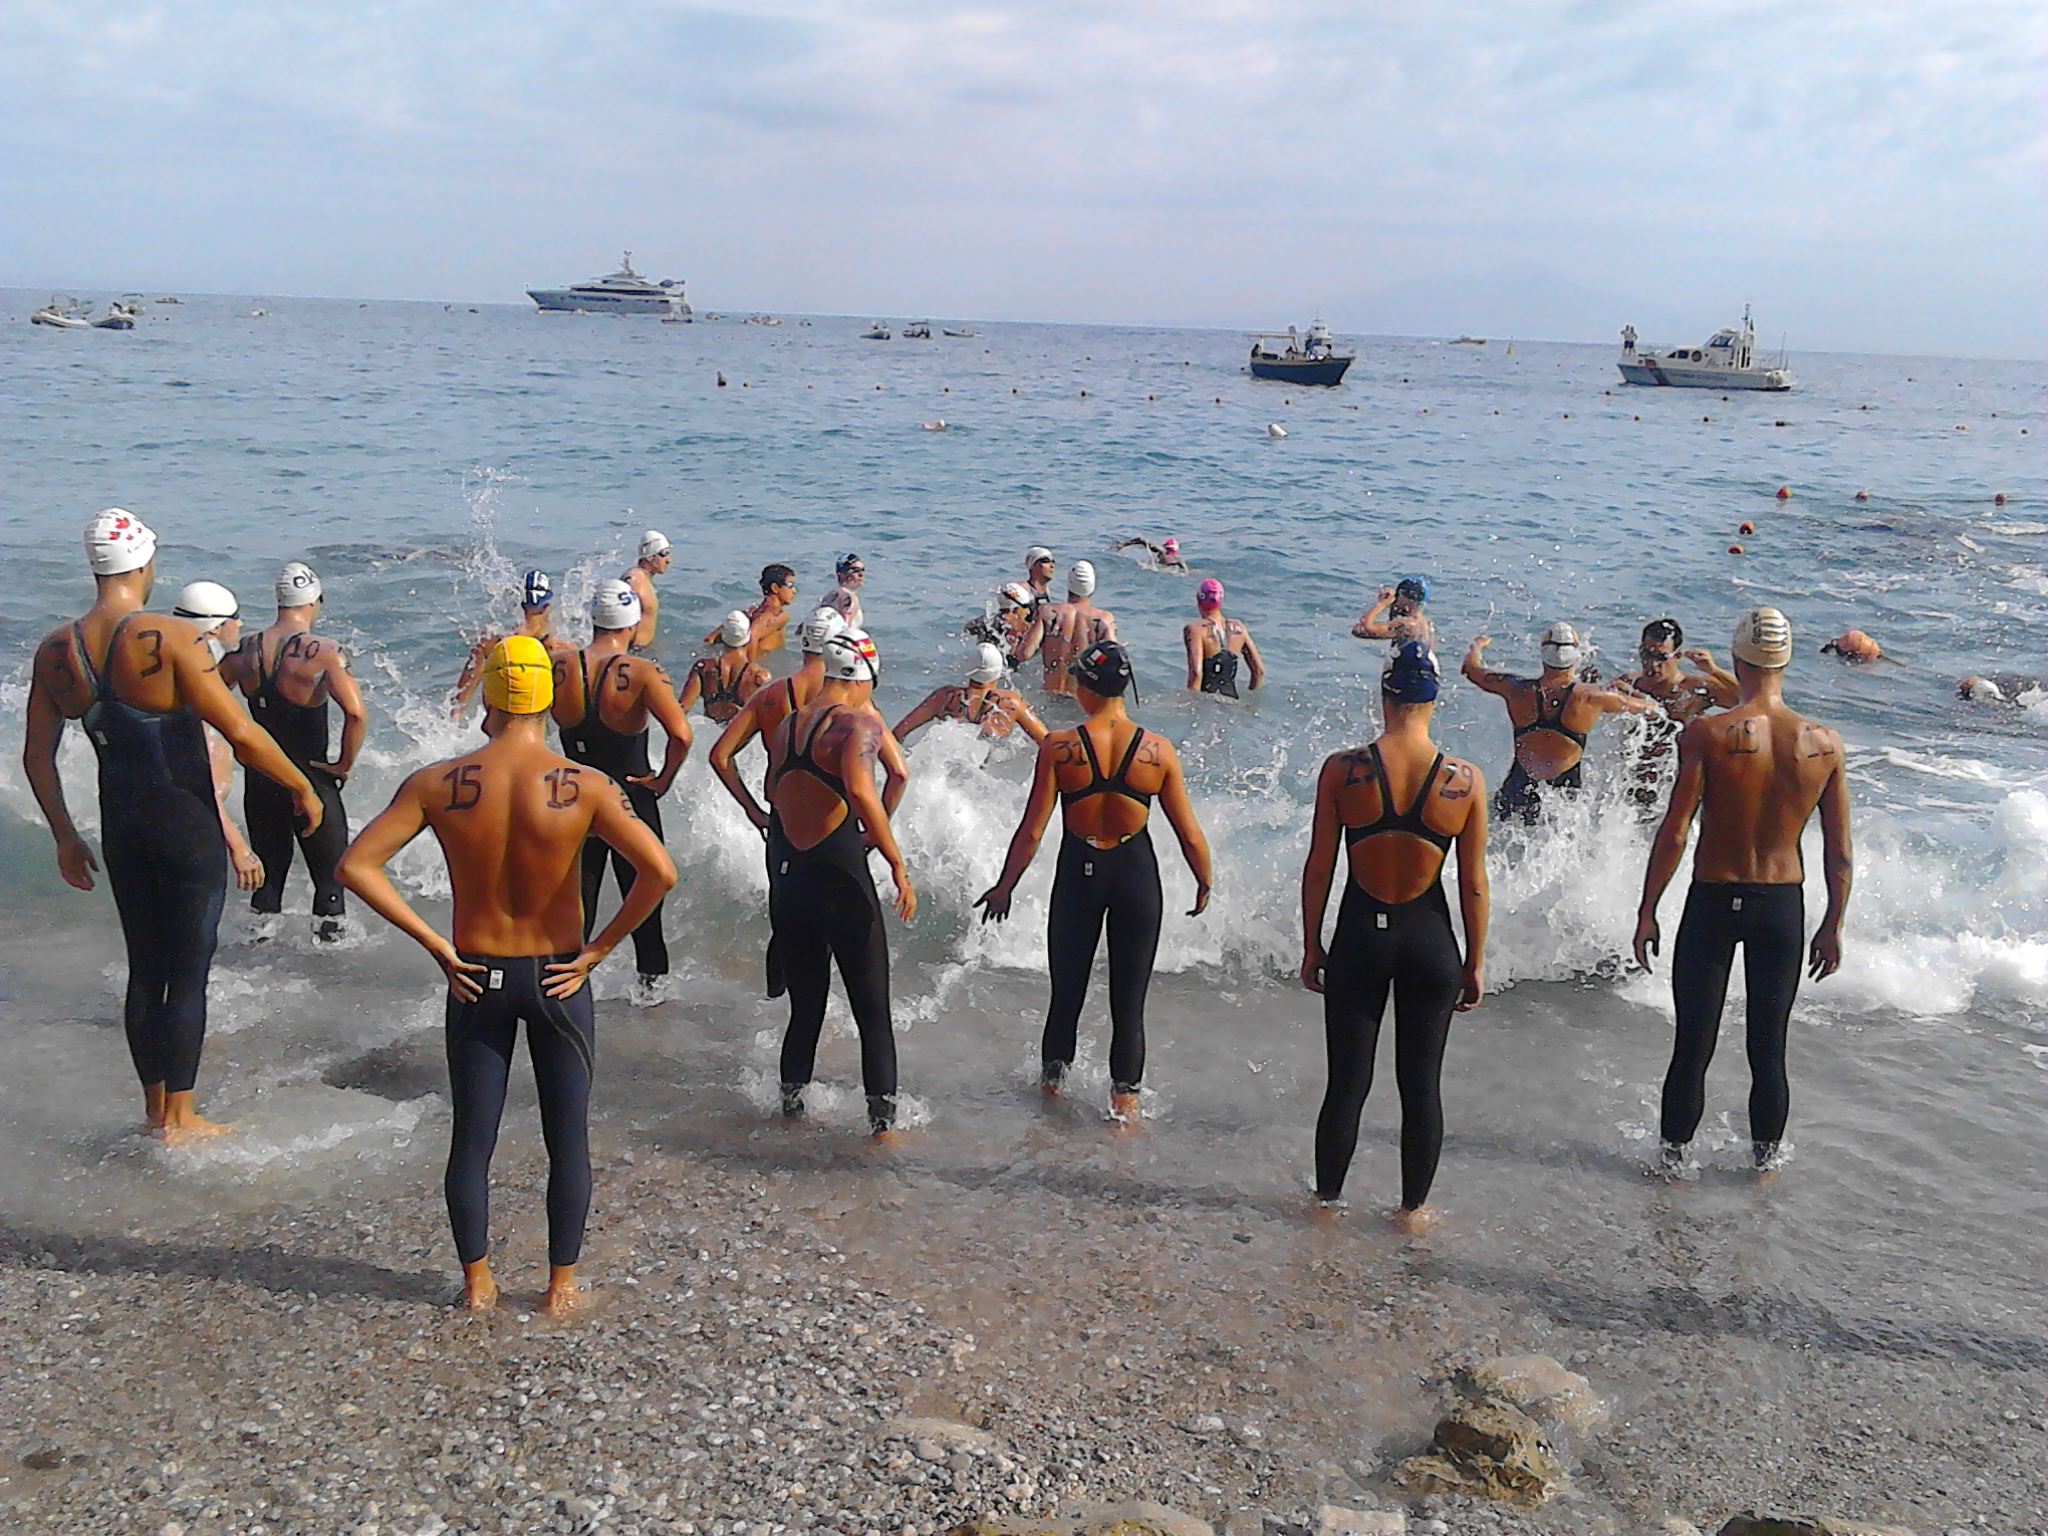 Capri-Napoli, l’argentino Balum e l’italiana Franco vincono la storica gara di nuoto